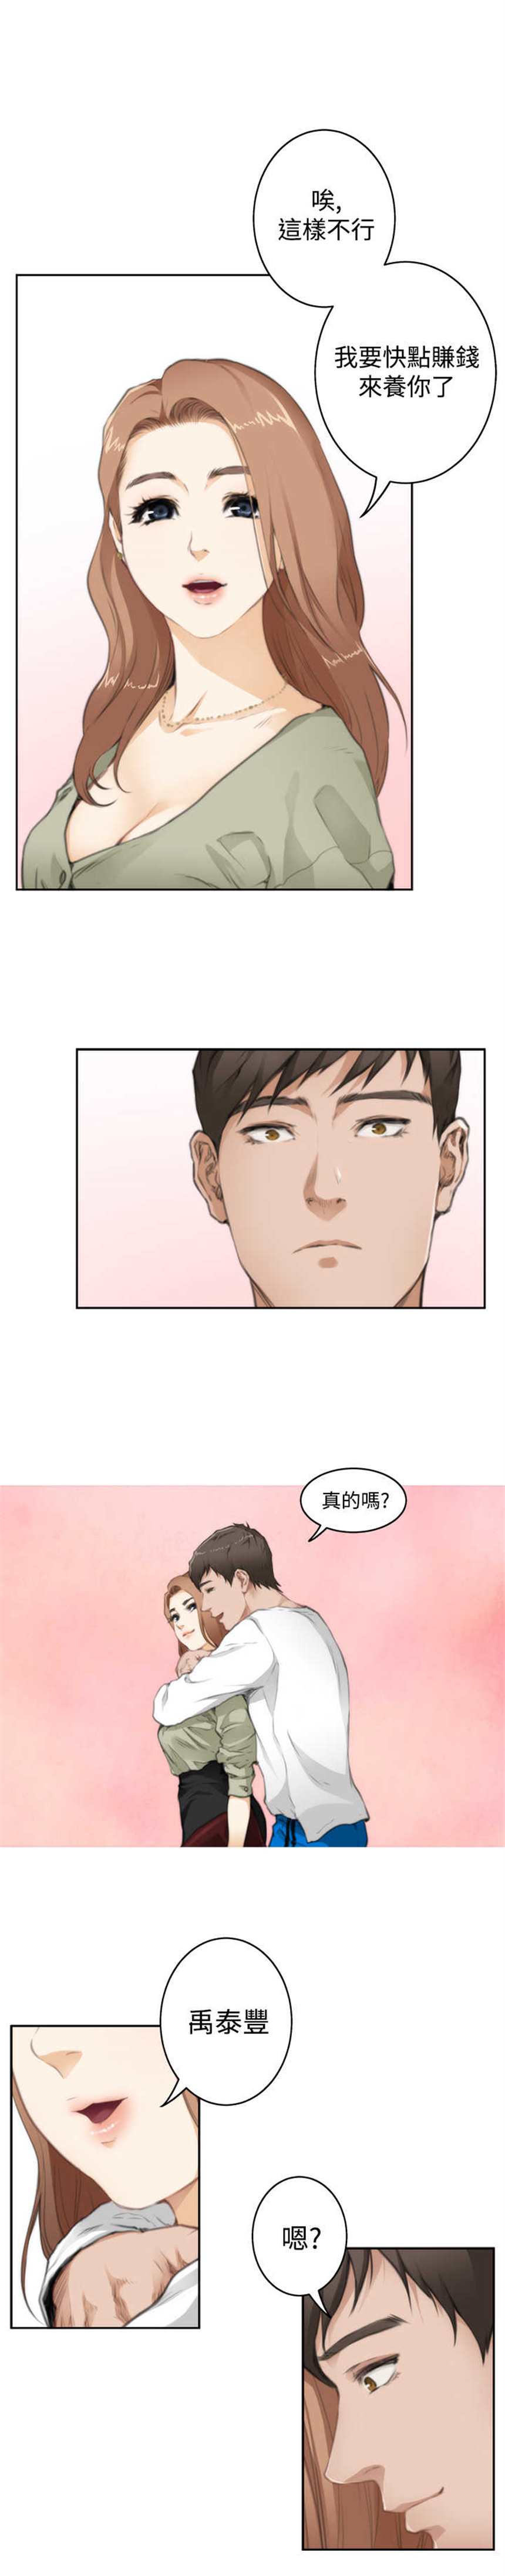 韩国漫画《爱上男闺蜜》第58话(点击浏览下一张趣图)